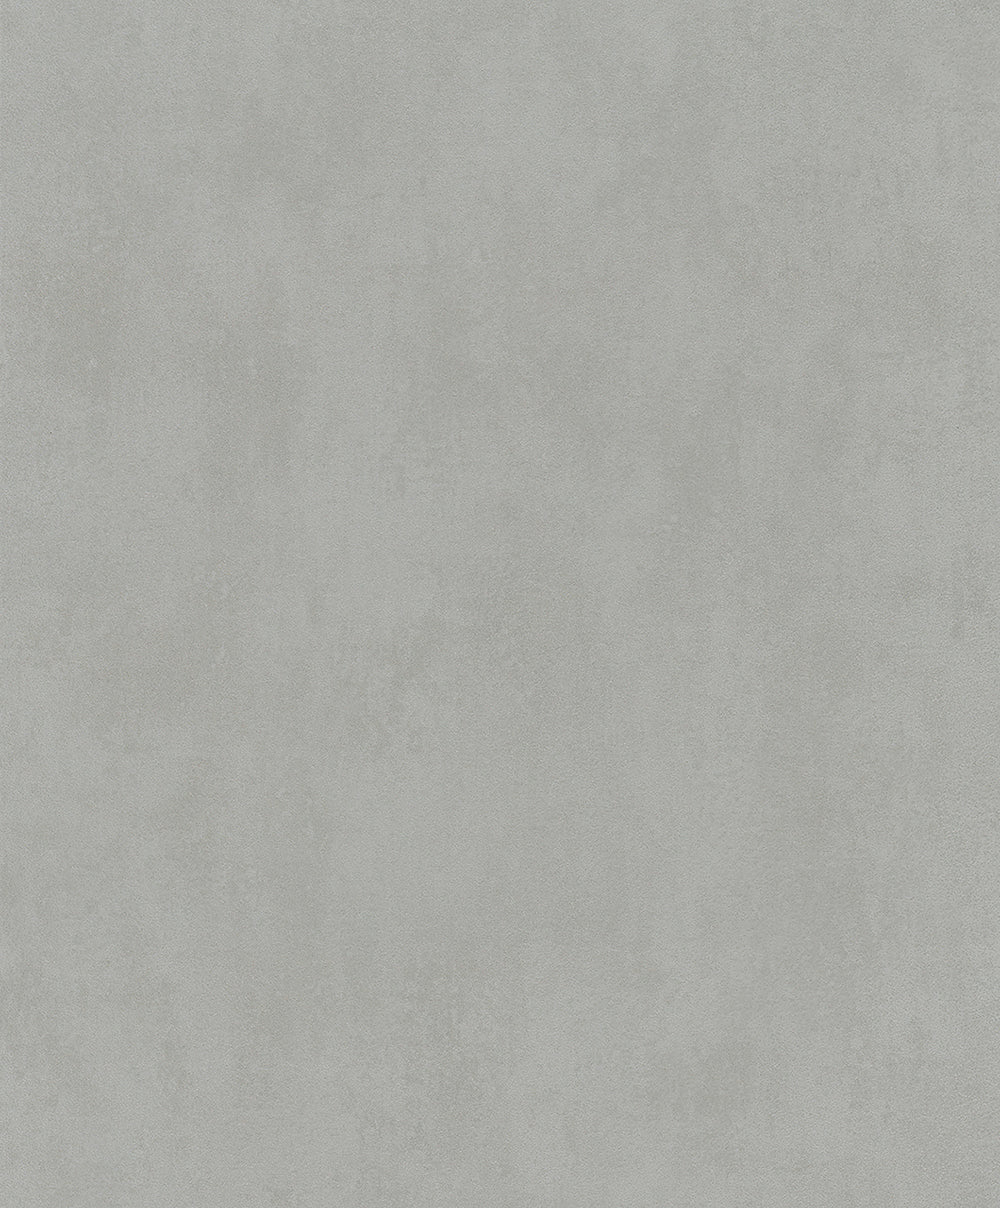 Schoner Wohnen New Spirit - Concrete plain wallpaper Marburg Roll Grey  32710